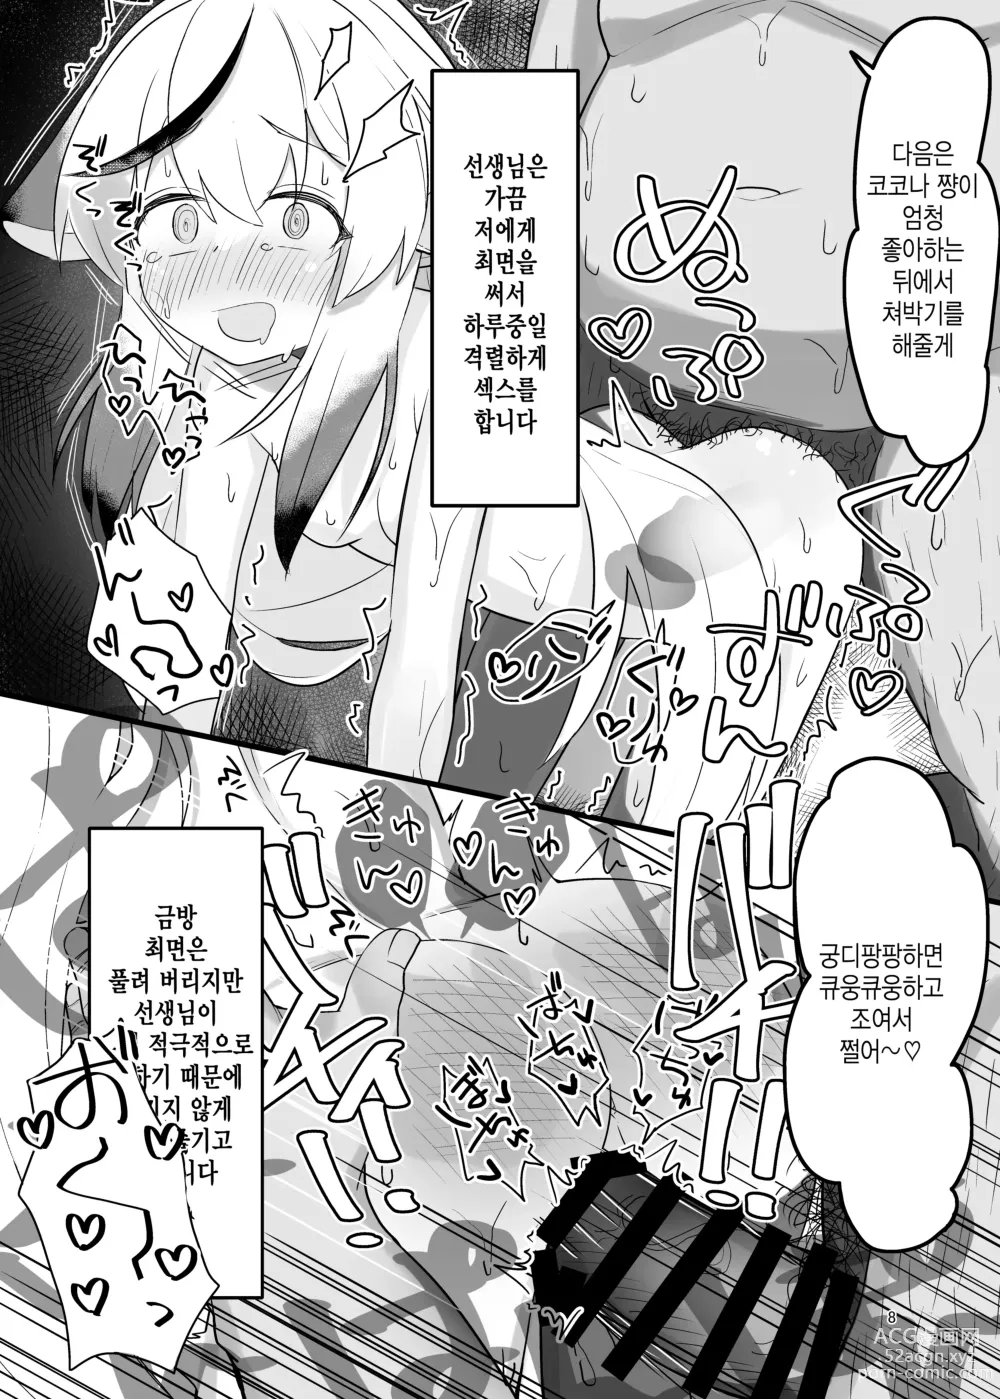 Page 7 of doujinshi 코코나 쨩 개변태 책